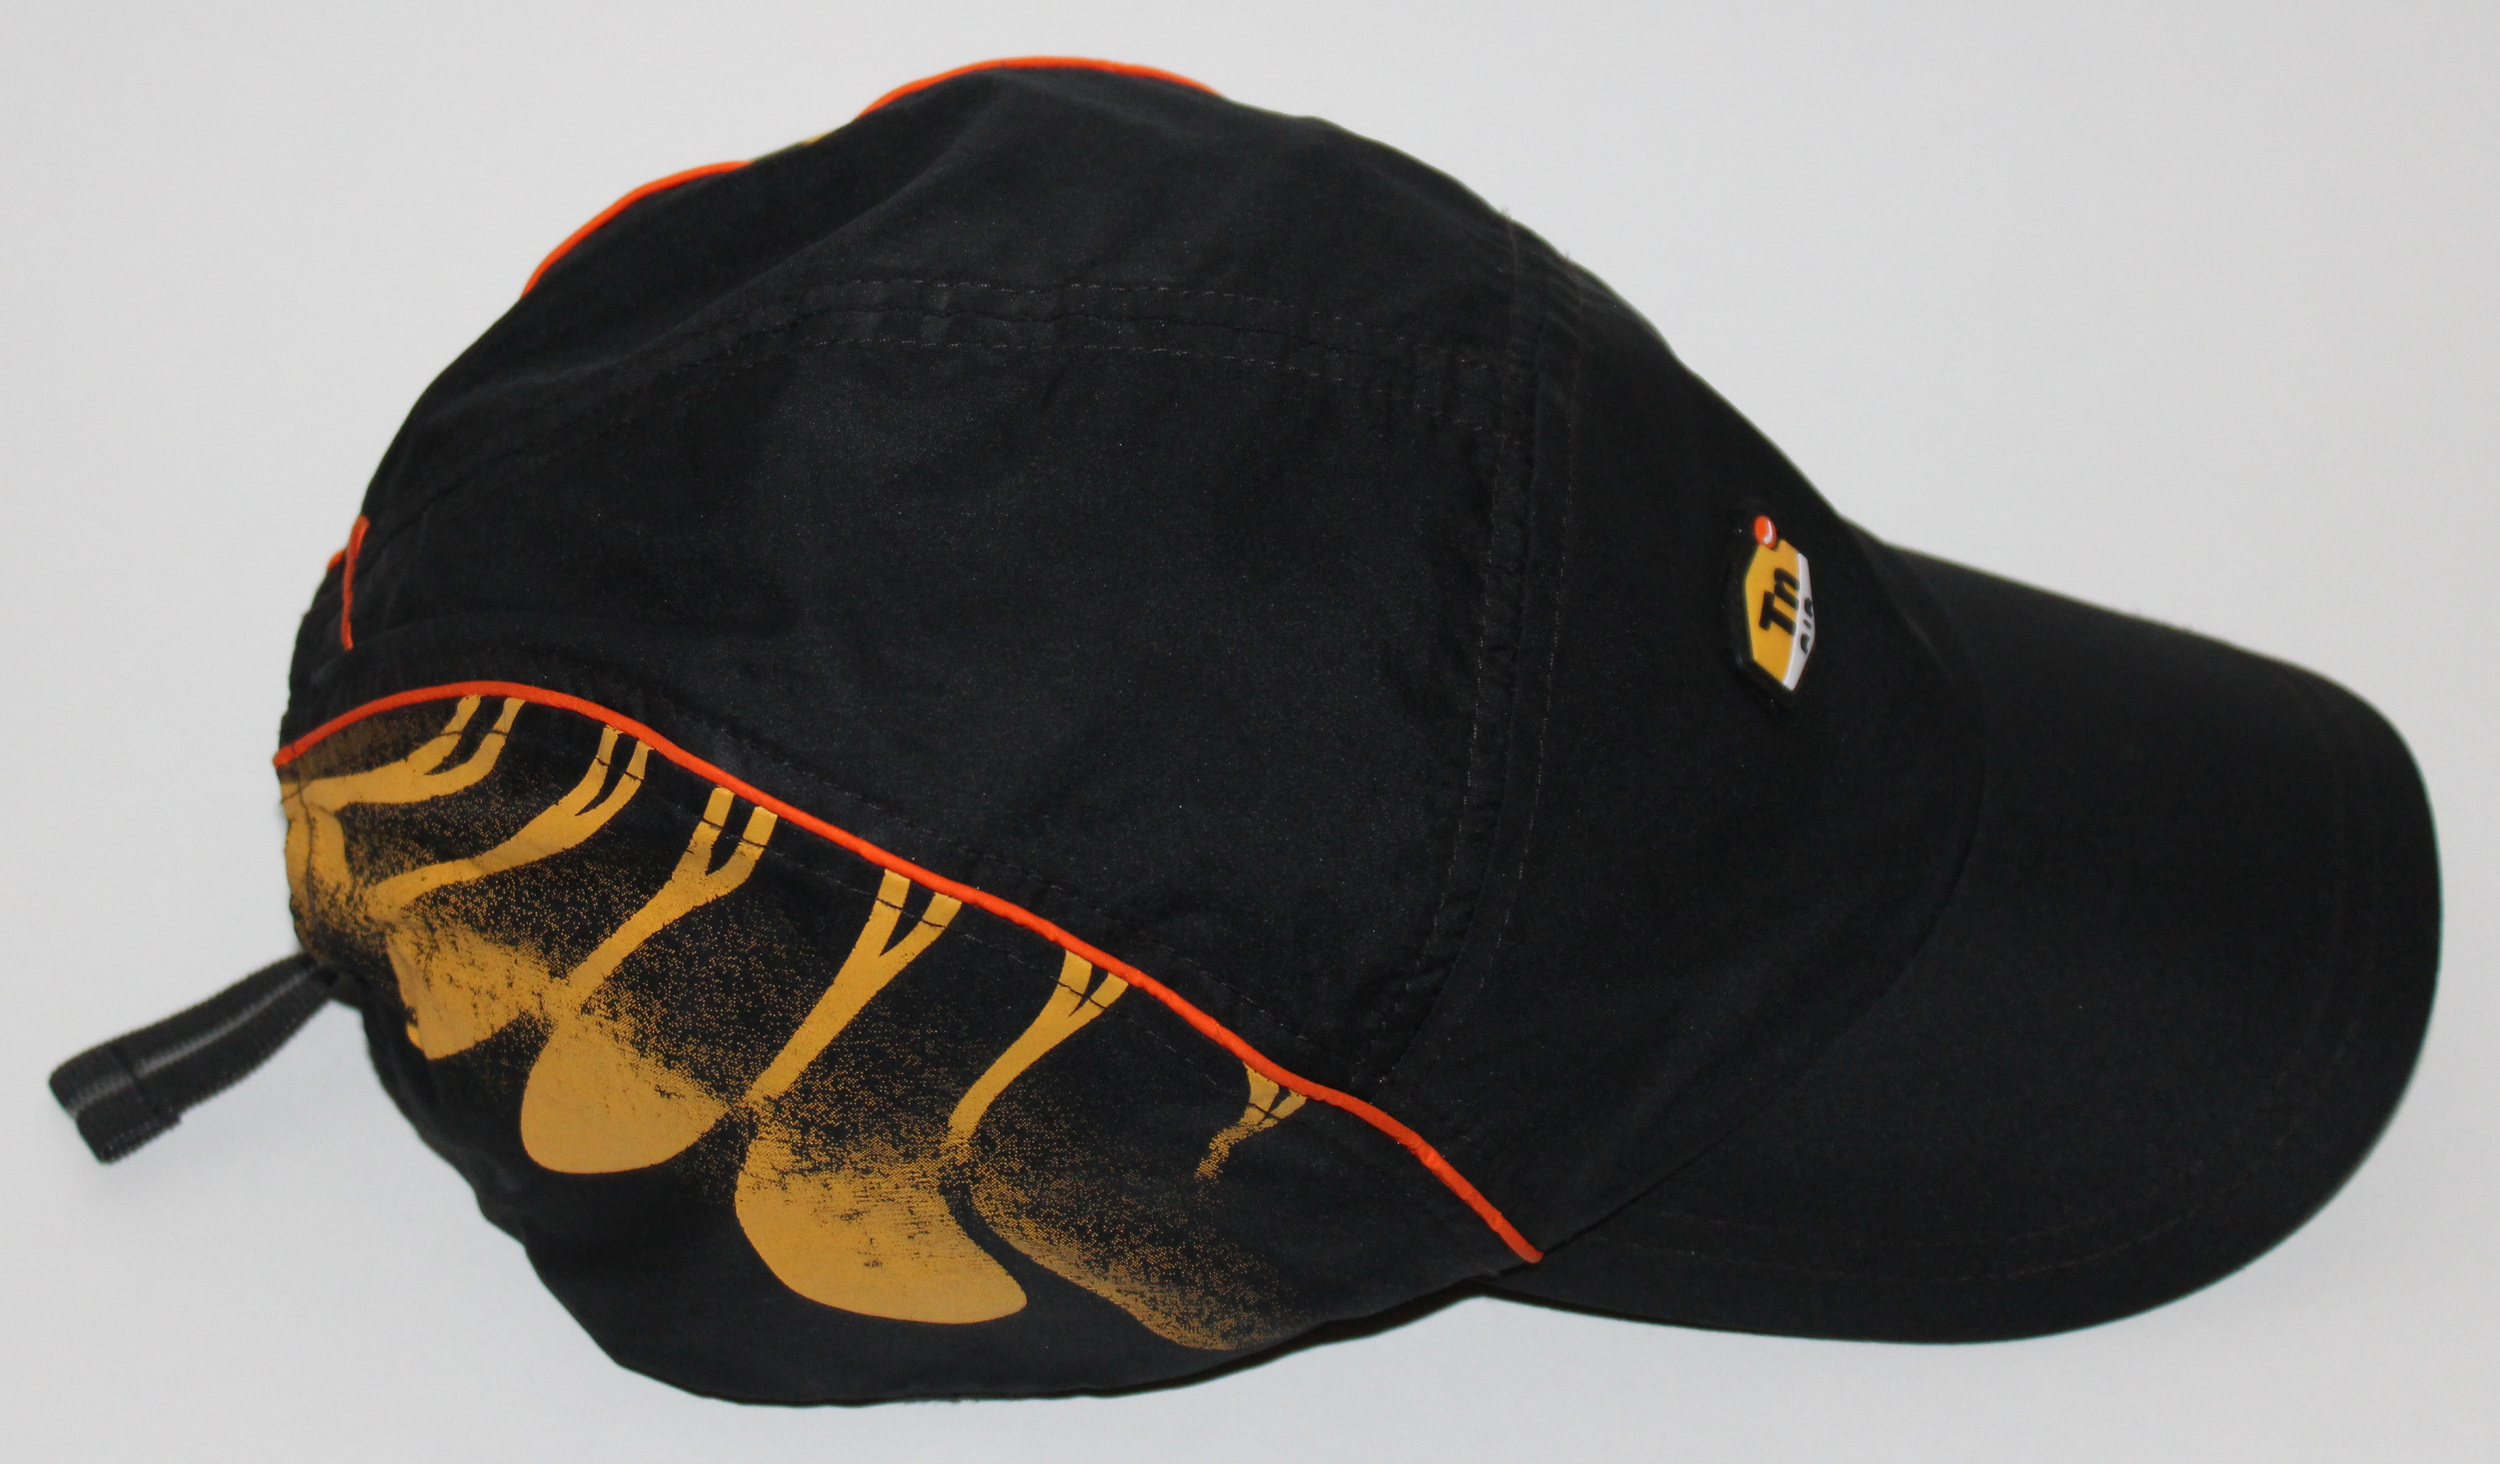 malicioso Terapia Grapa Nike (TN) Tuned Air Max Plus 5 Panel Hat Black/Orange — Roots